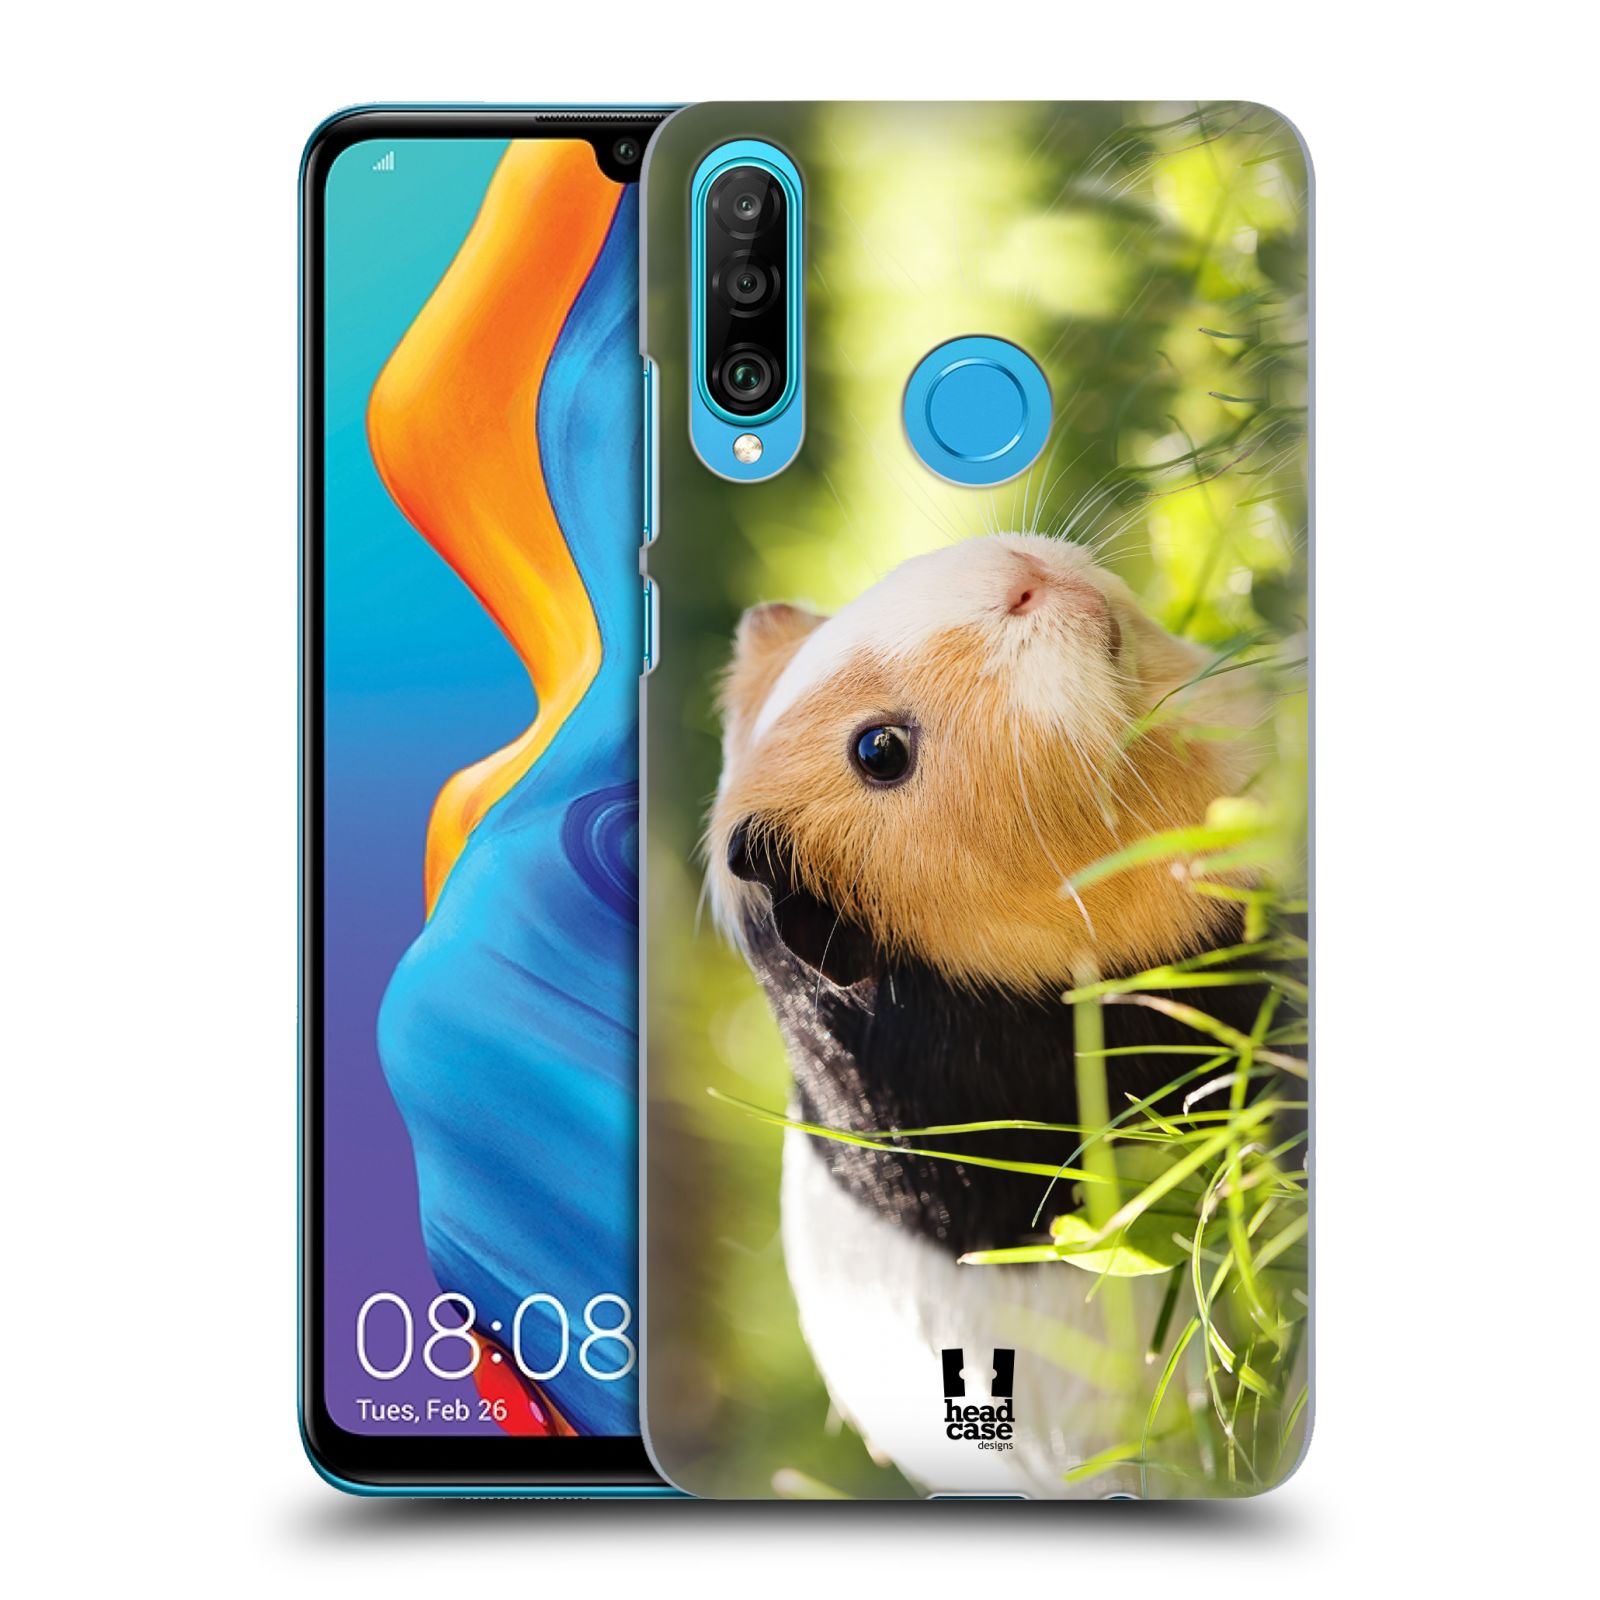 Pouzdro na mobil Huawei P30 LITE - HEAD CASE - vzor slavná zvířata foto morče